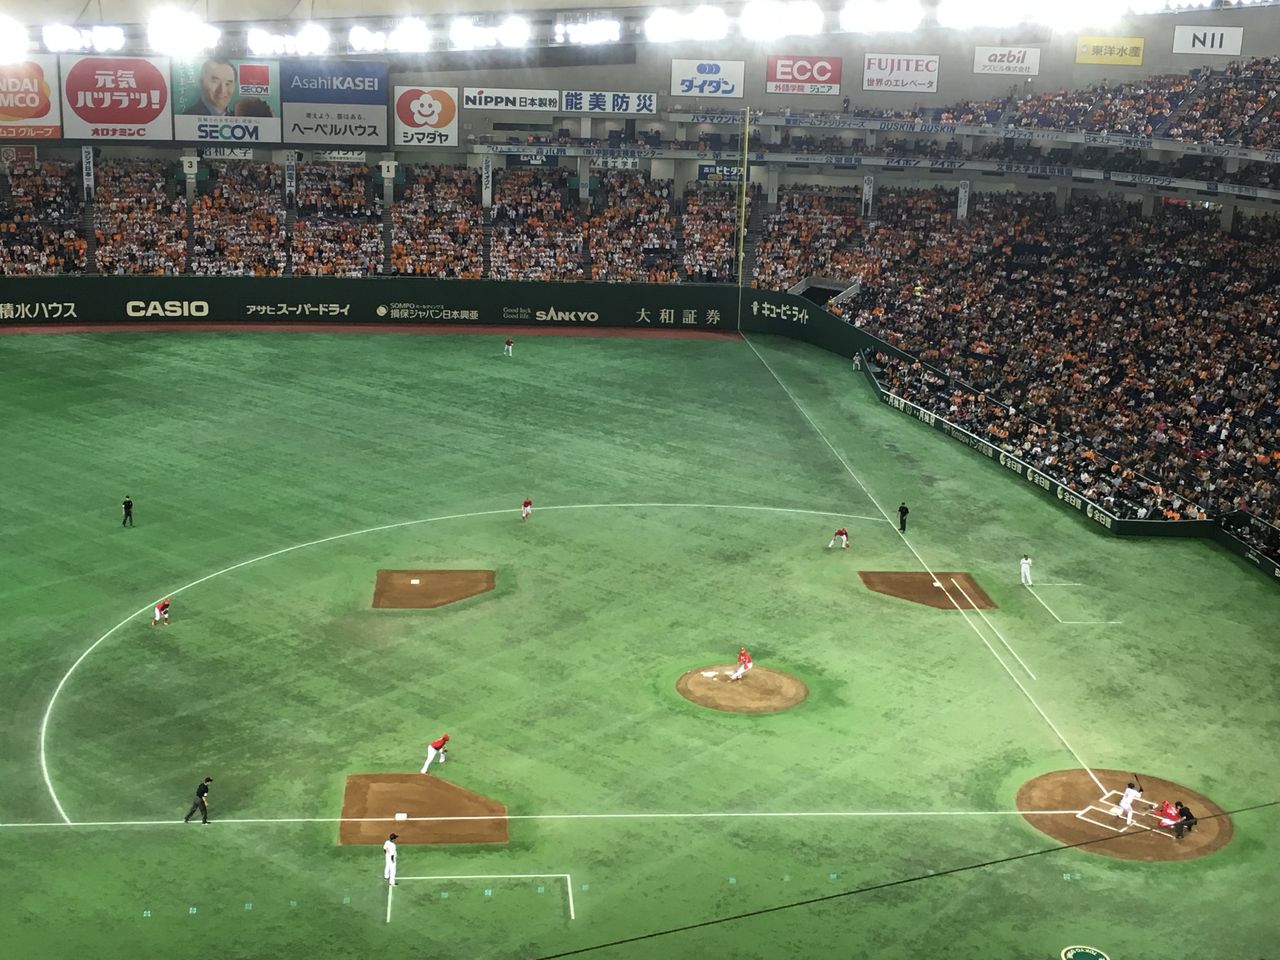 16プロ野球観戦 Vol 2 広島vs巨人 東京ドーム Sotomayor Blog